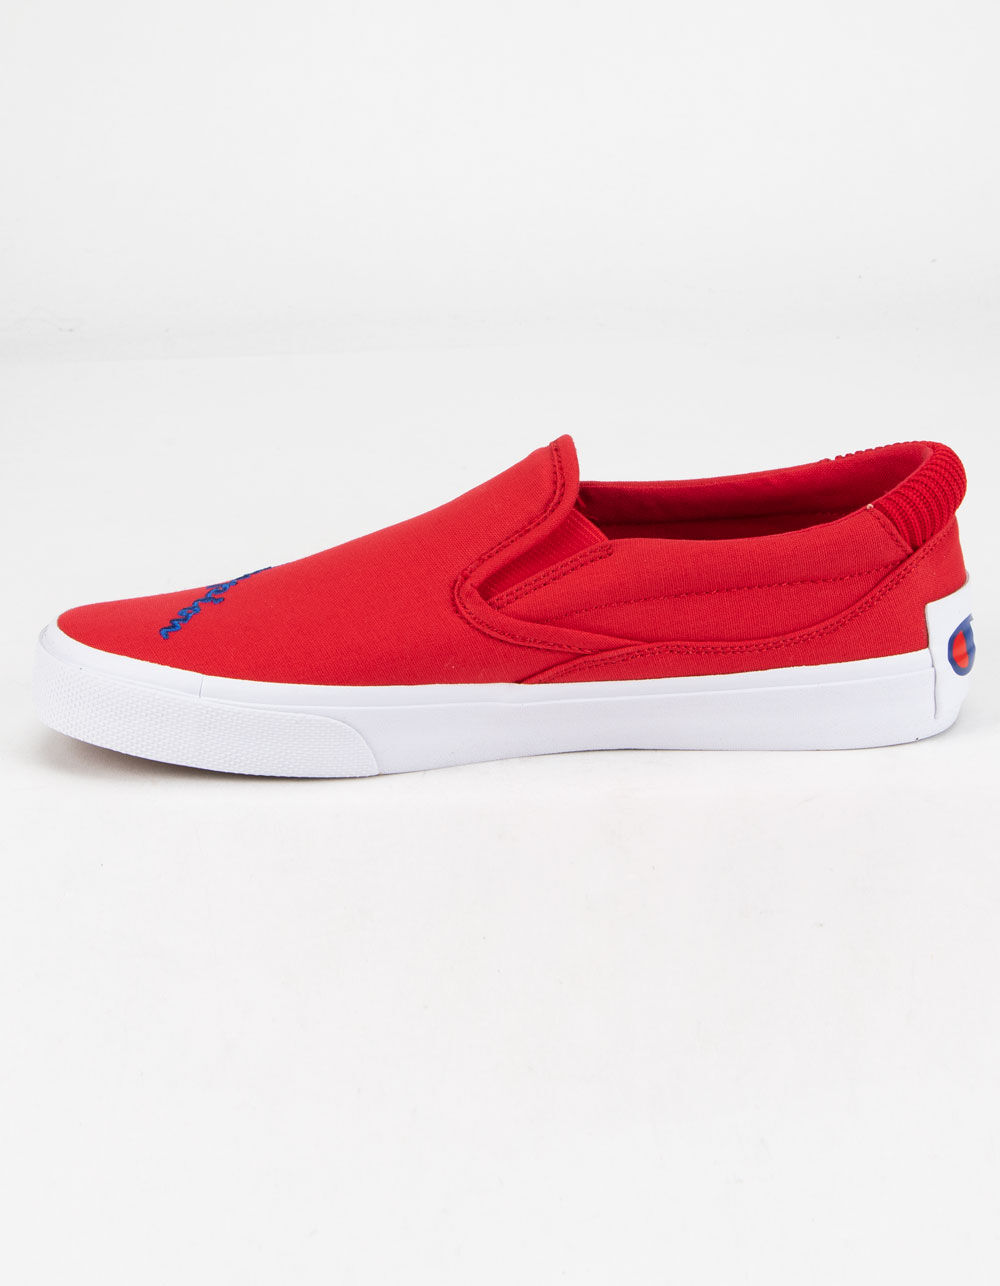 CHAMPION Fringe Slip-On Red Shoes - RED | Tillys